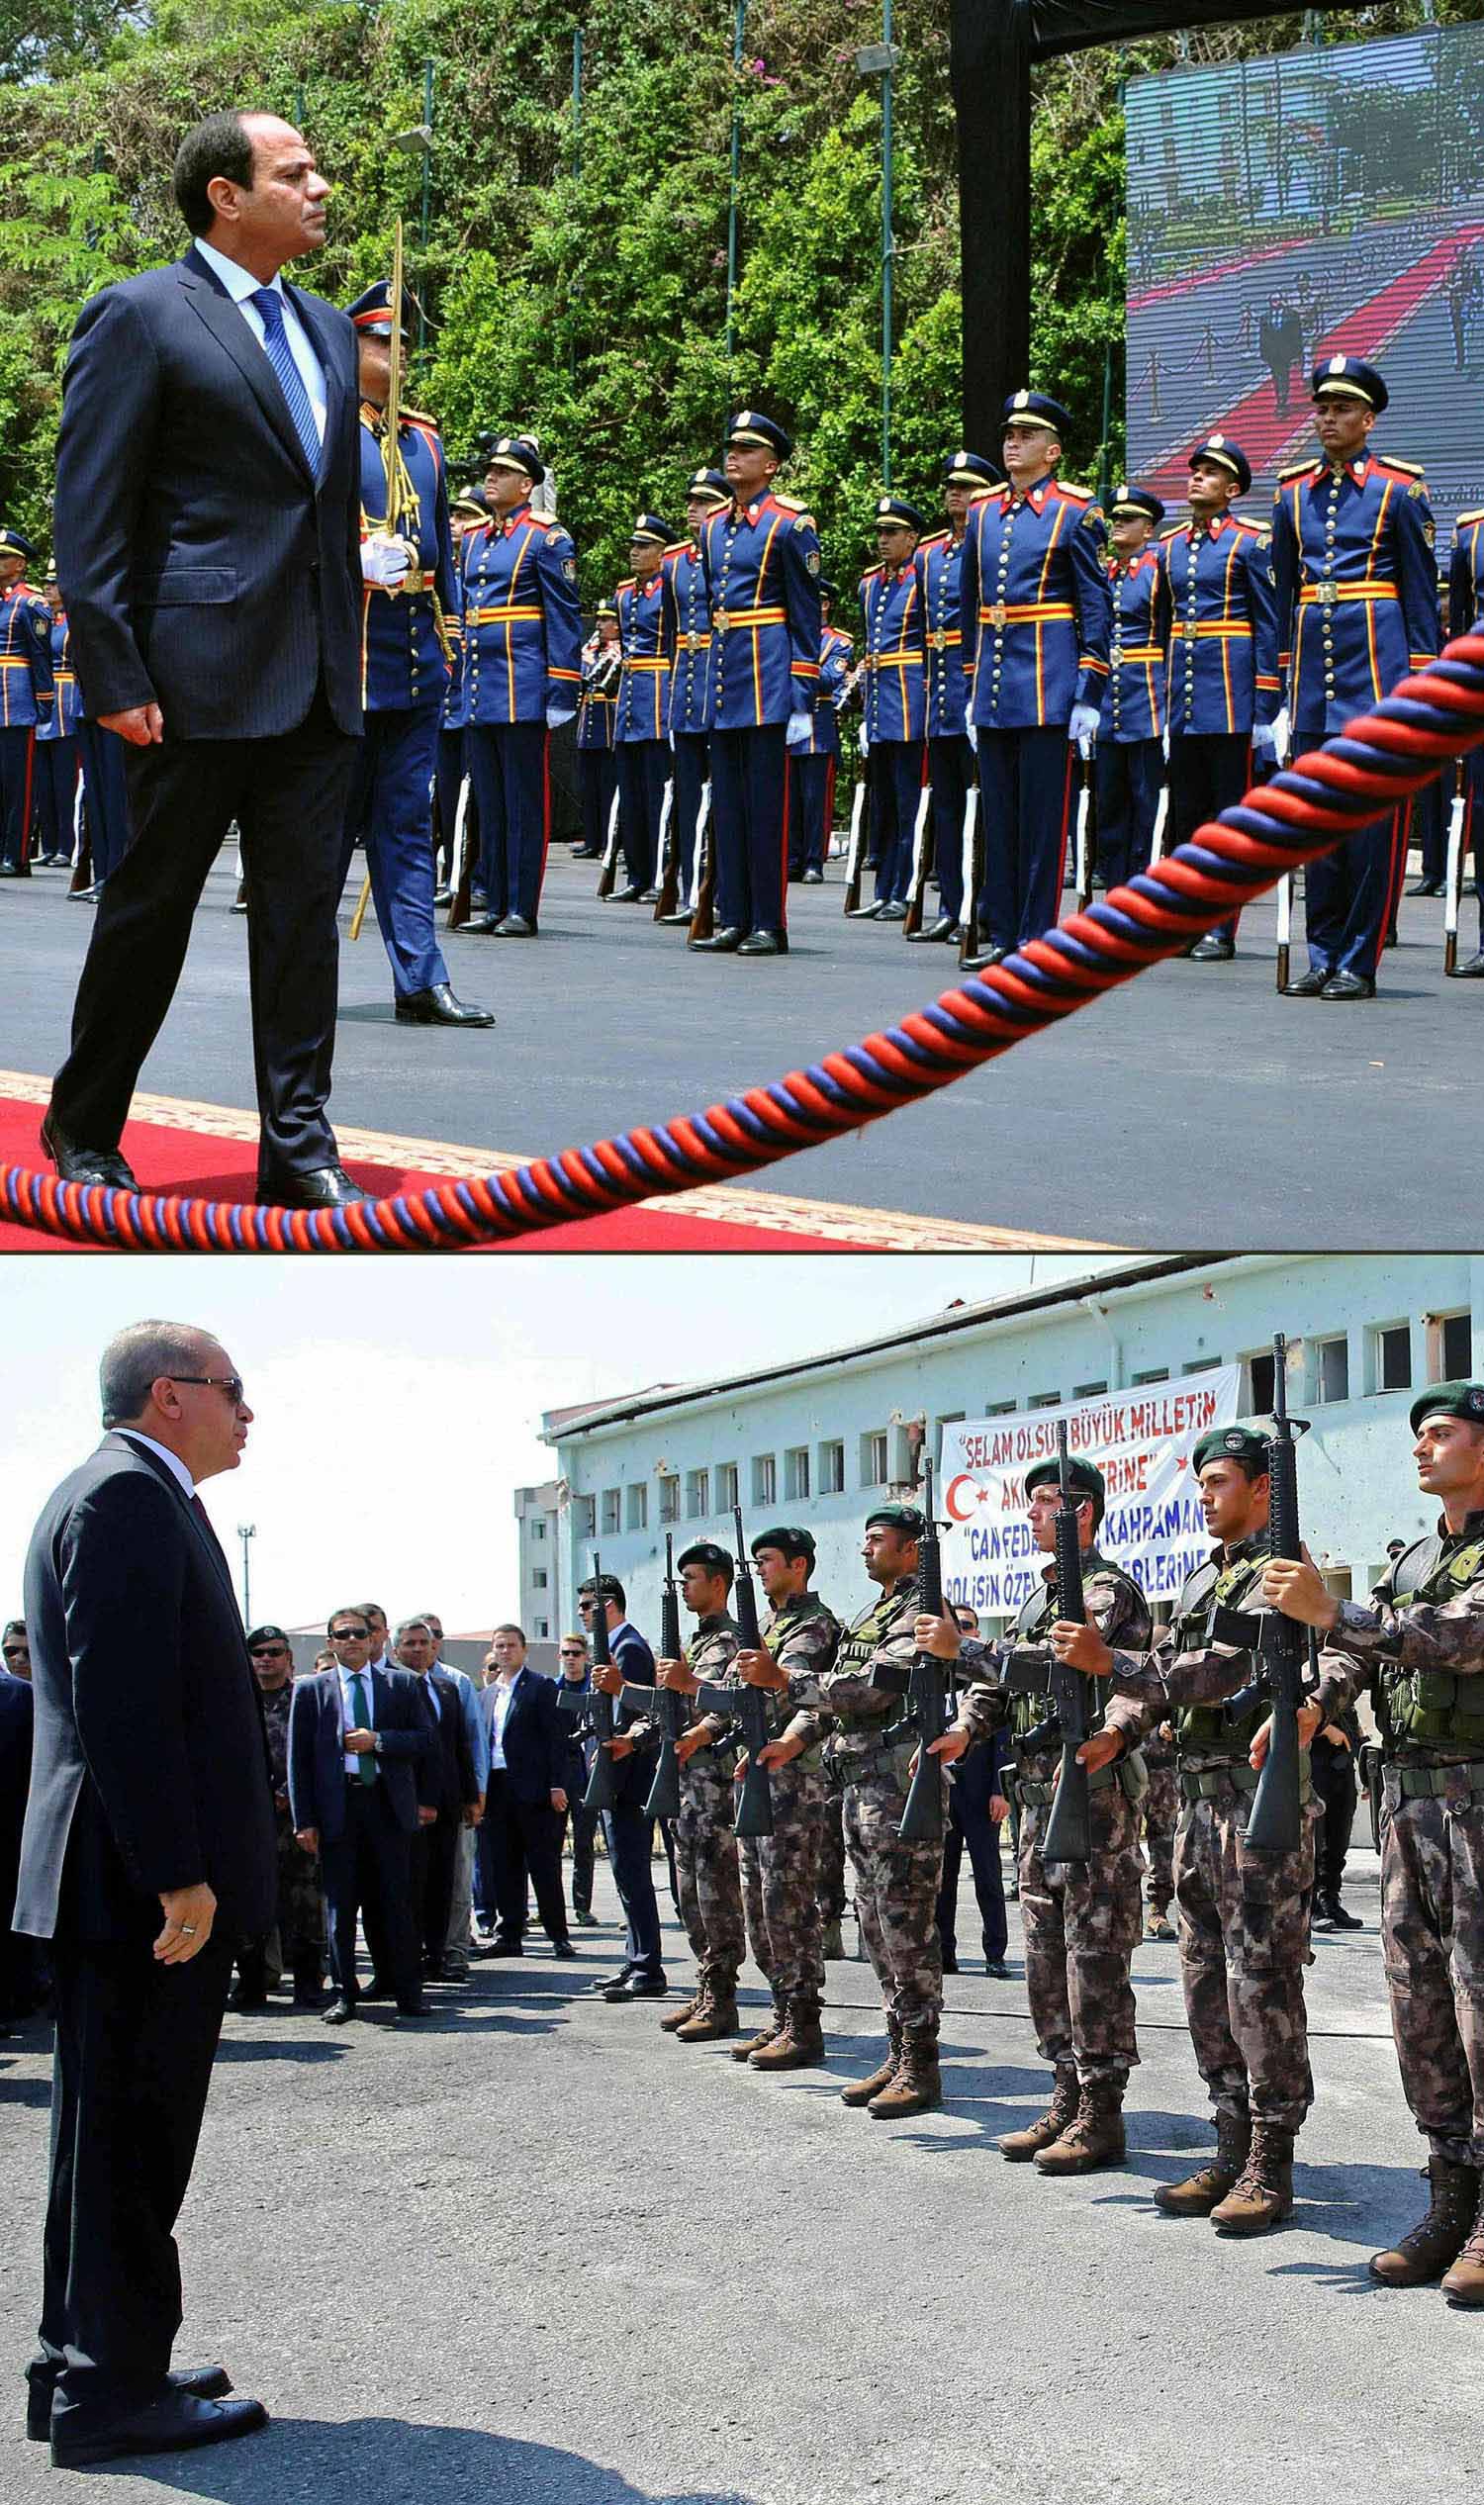 الرئيس المصري عبدالفتاح السيسي يستعرض جنوده والرئيس التركي رجب طيب أردوغان يستعرض جنوده